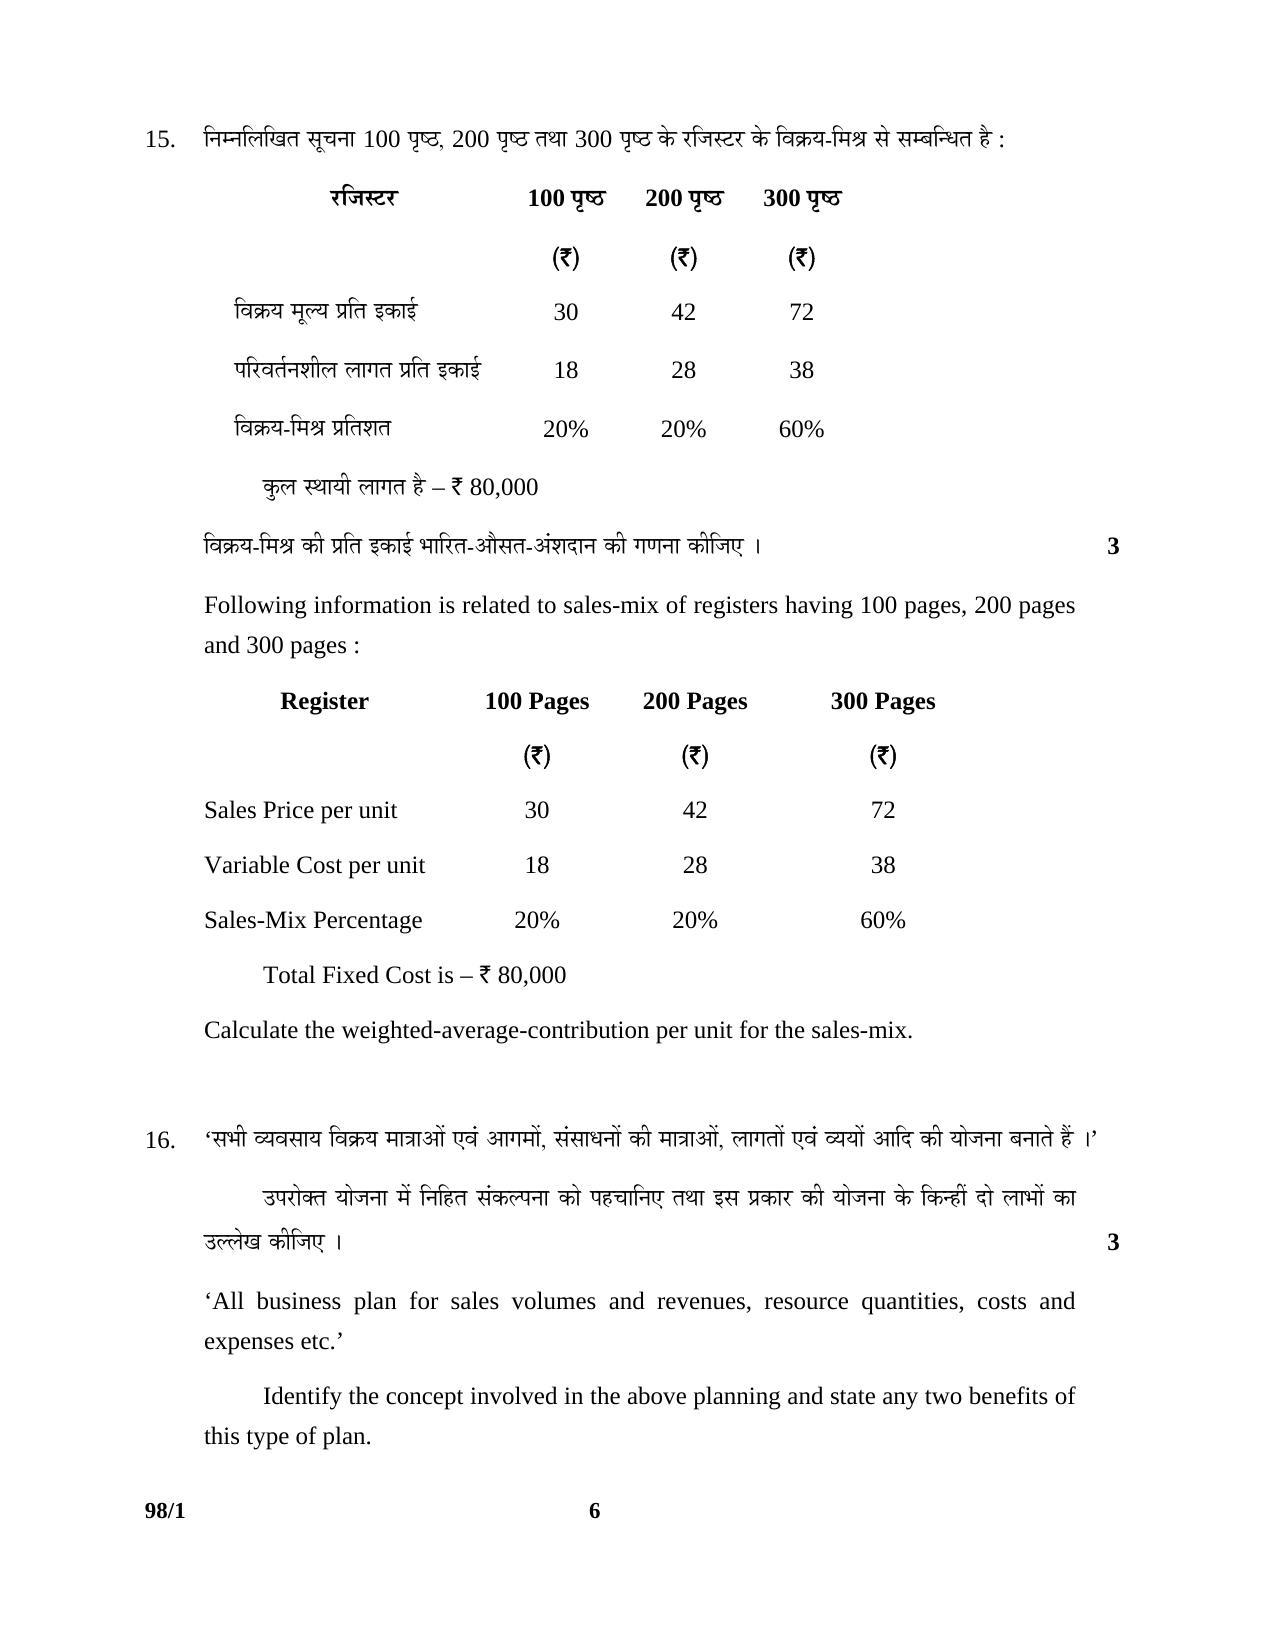 CBSE Class 12 98-1 ENTREPRENEURSHIP 2016 Question Paper - Page 6